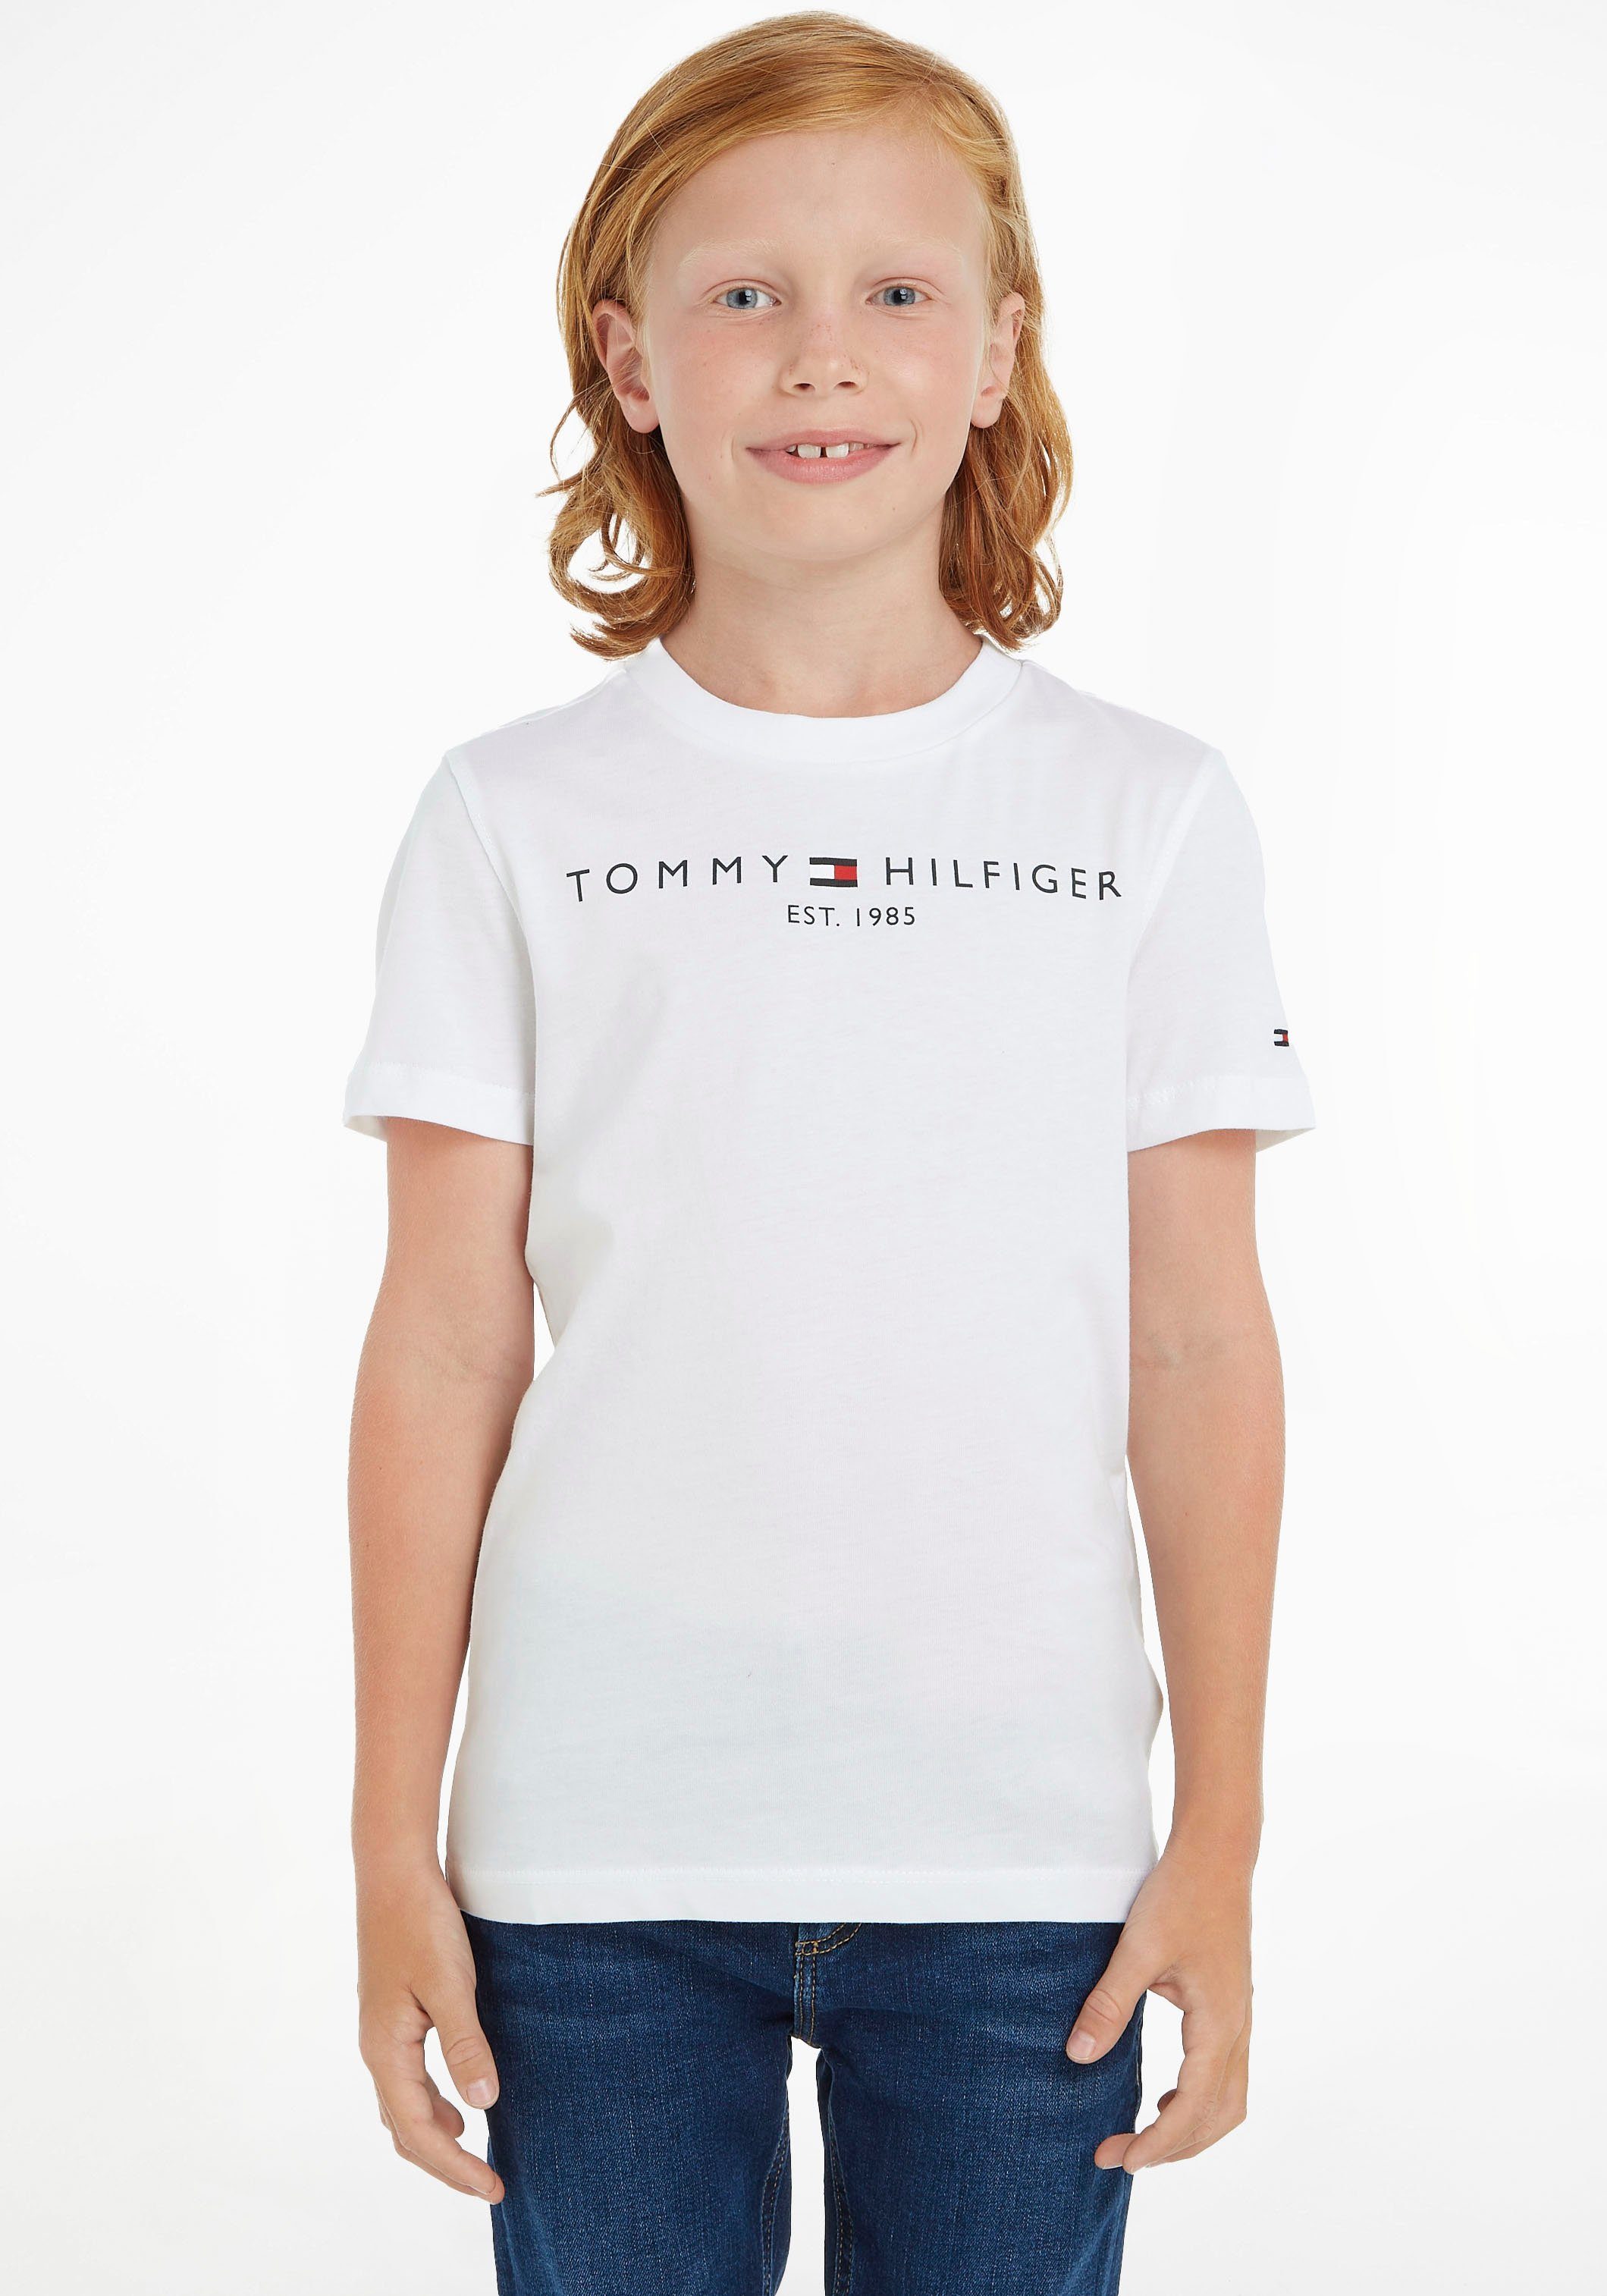 Tommy Hilfiger T-Shirt und TEE Label Hinten Jungen Mädchen, ESSENTIAL Kids mit Junior am kleinem Ausschnitt MiniMe,für Kinder